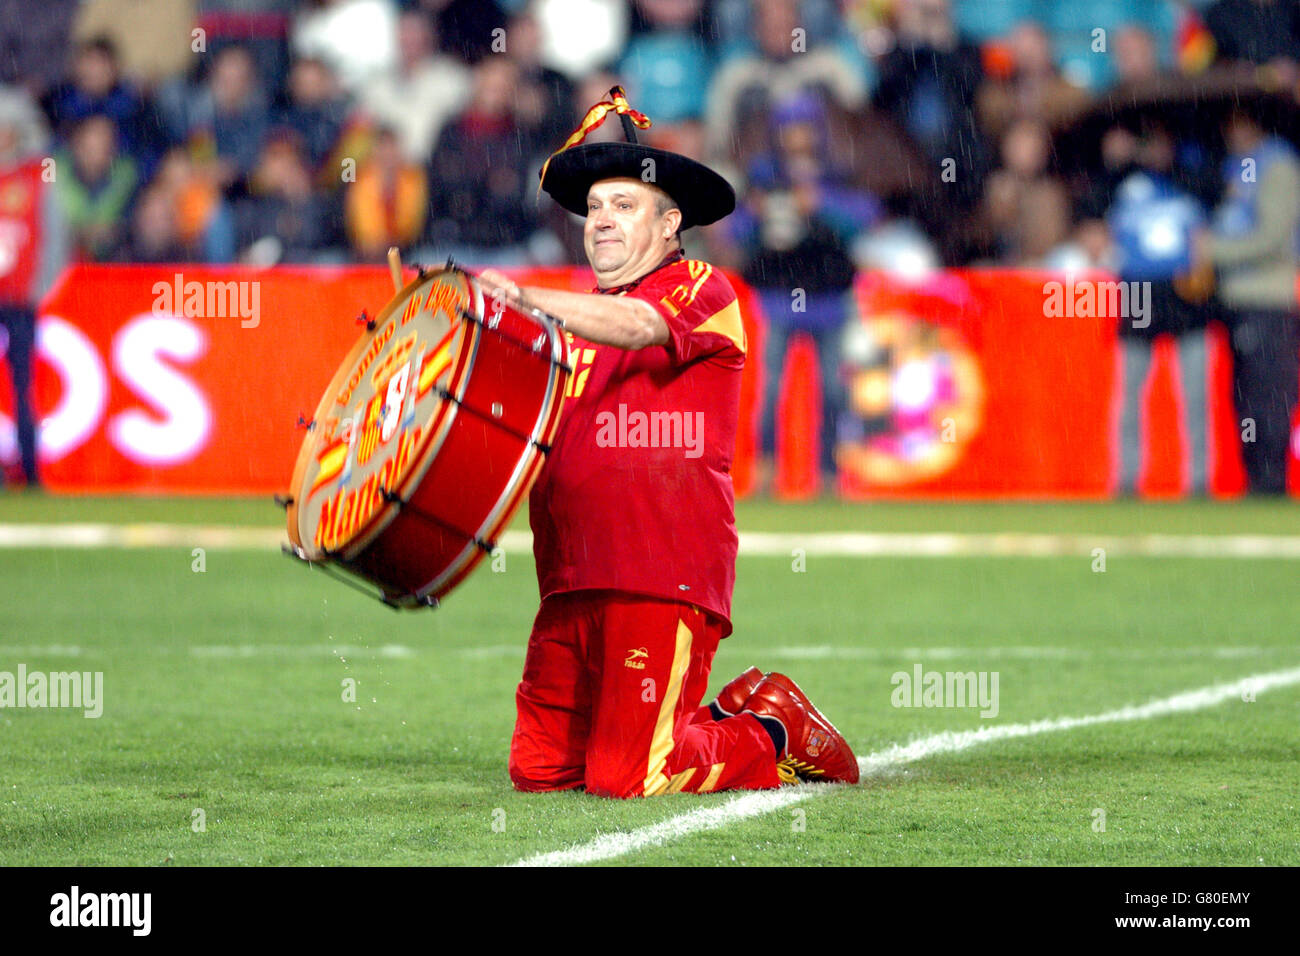 Fußball - Internationale Freundschaften - Spanien - China - Helmantico  Stadium. Ein spanischer Fan mit einer Trommel auf dem Spielfeld  Stockfotografie - Alamy